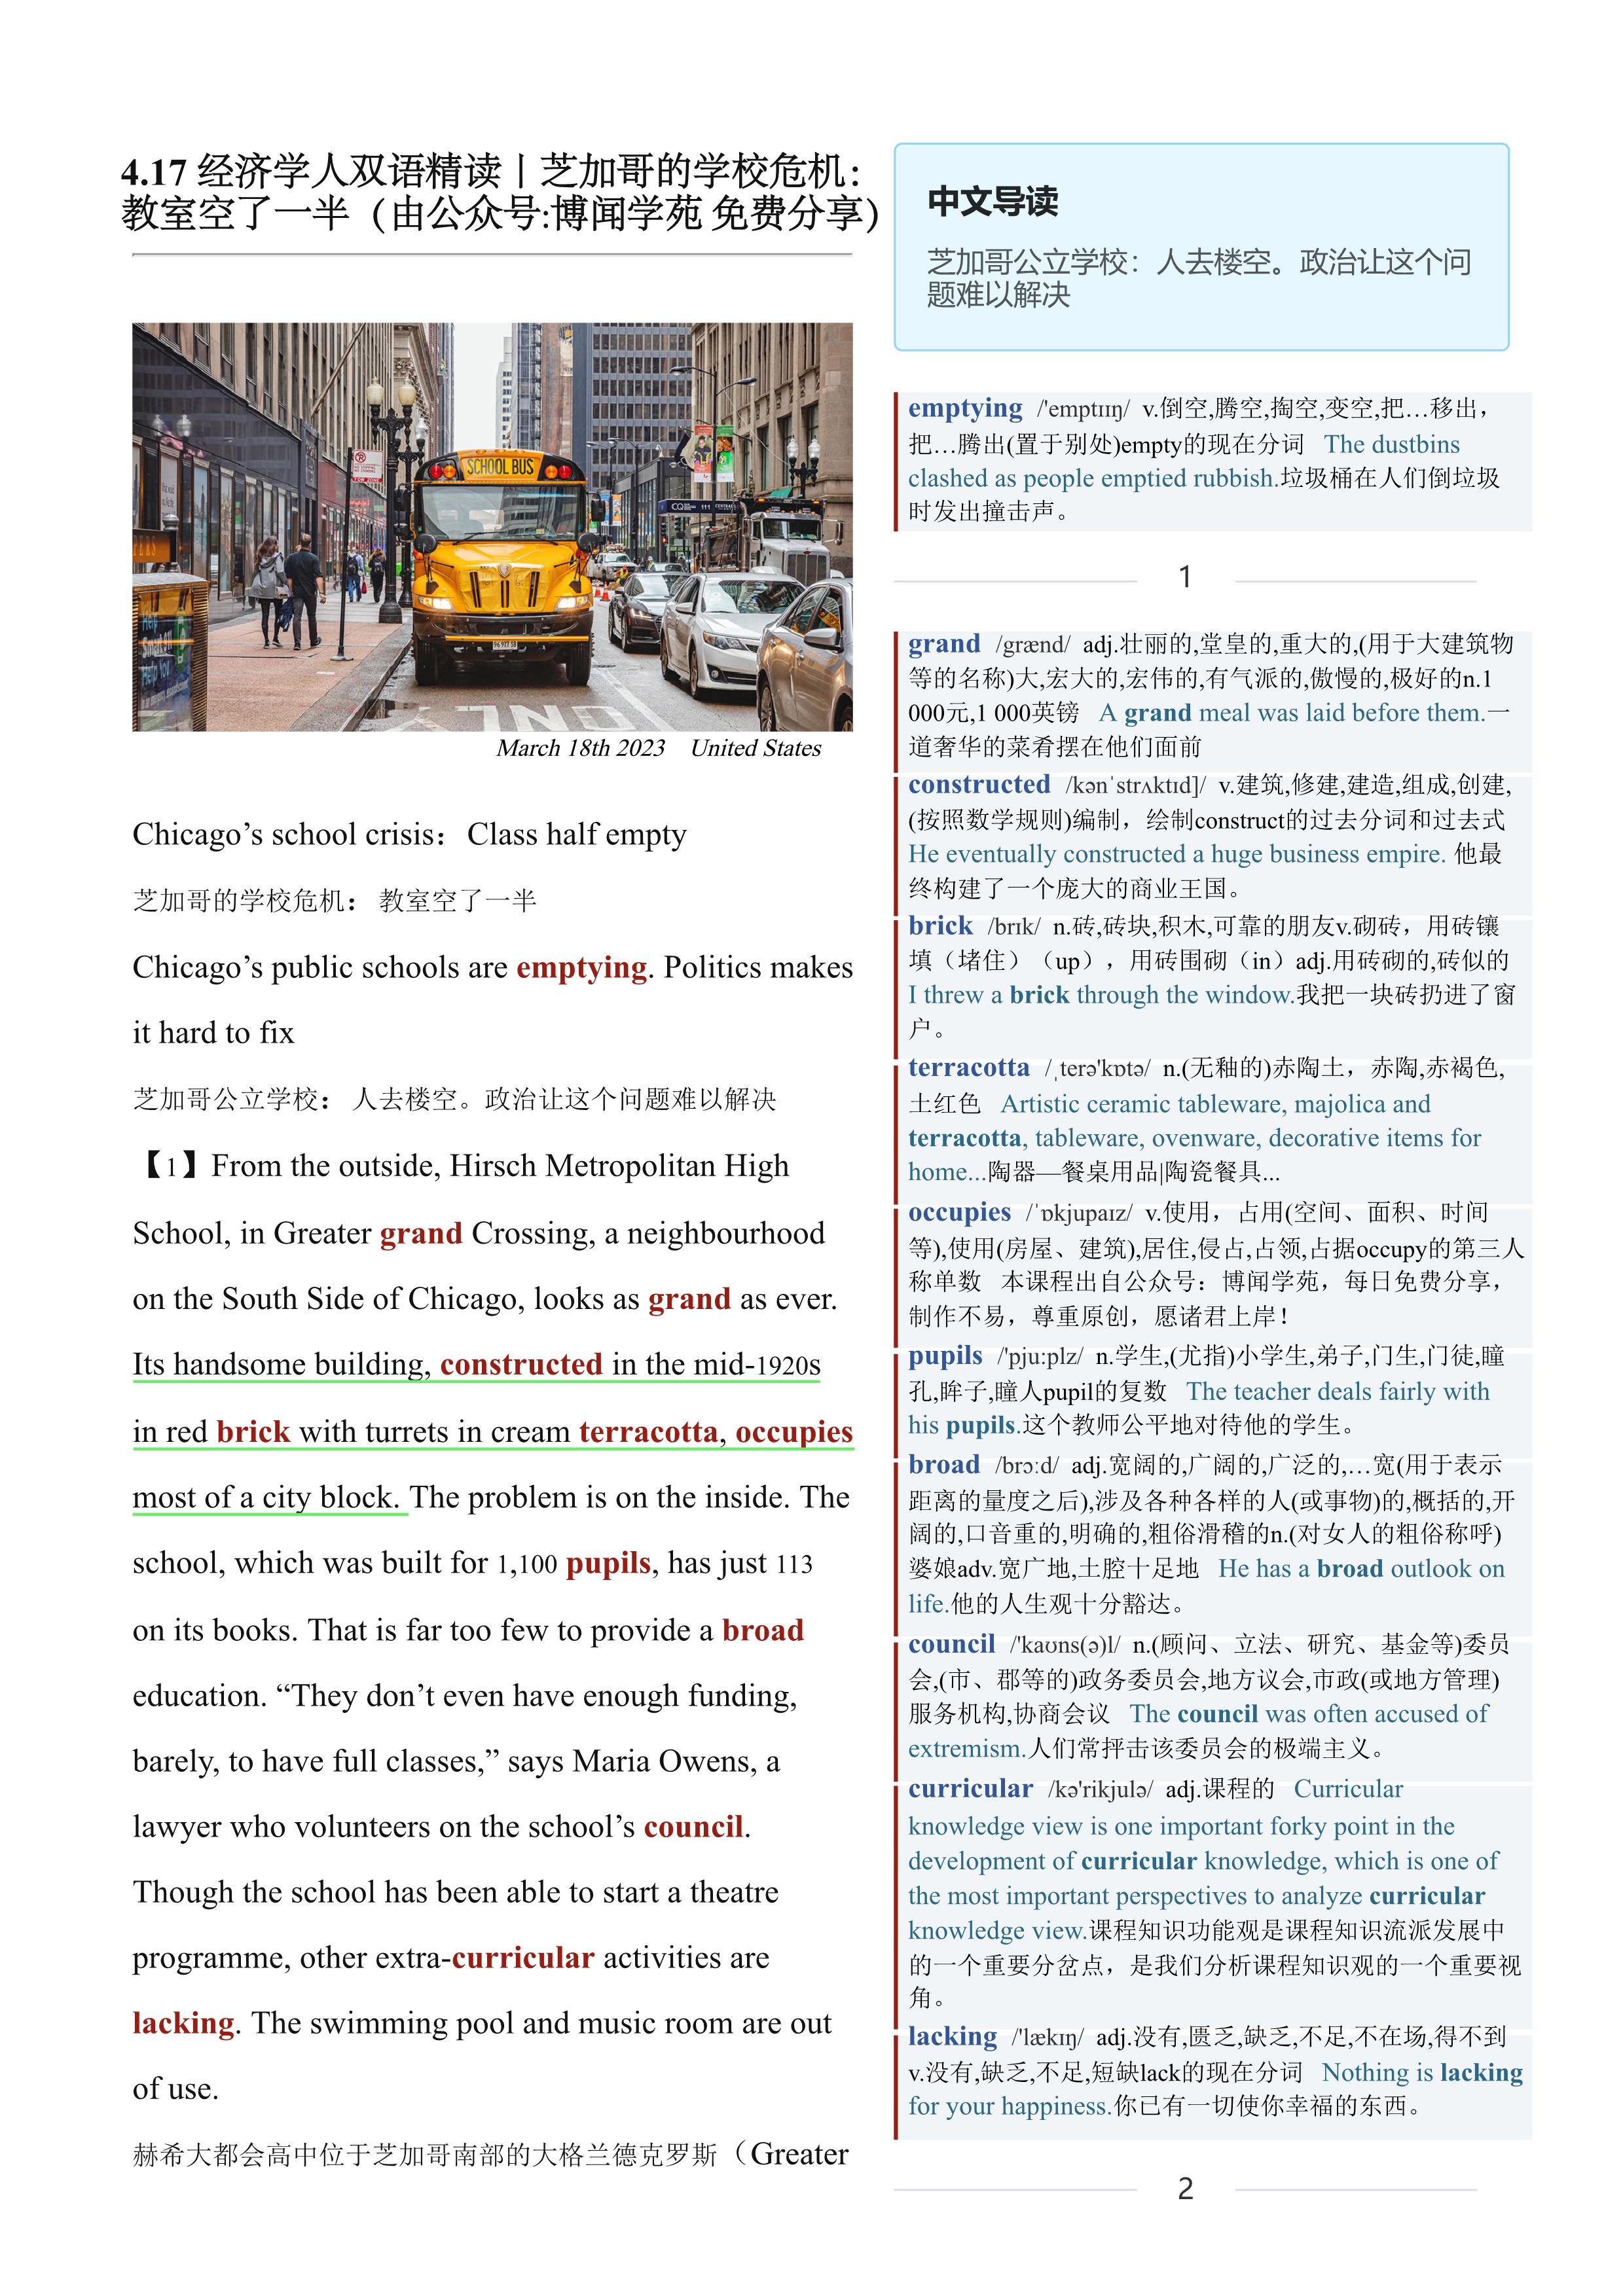 2023.04.17 经济学人双语精读丨芝加哥的学校危机：教室空了一半 (.PDF/DOC/MP3)